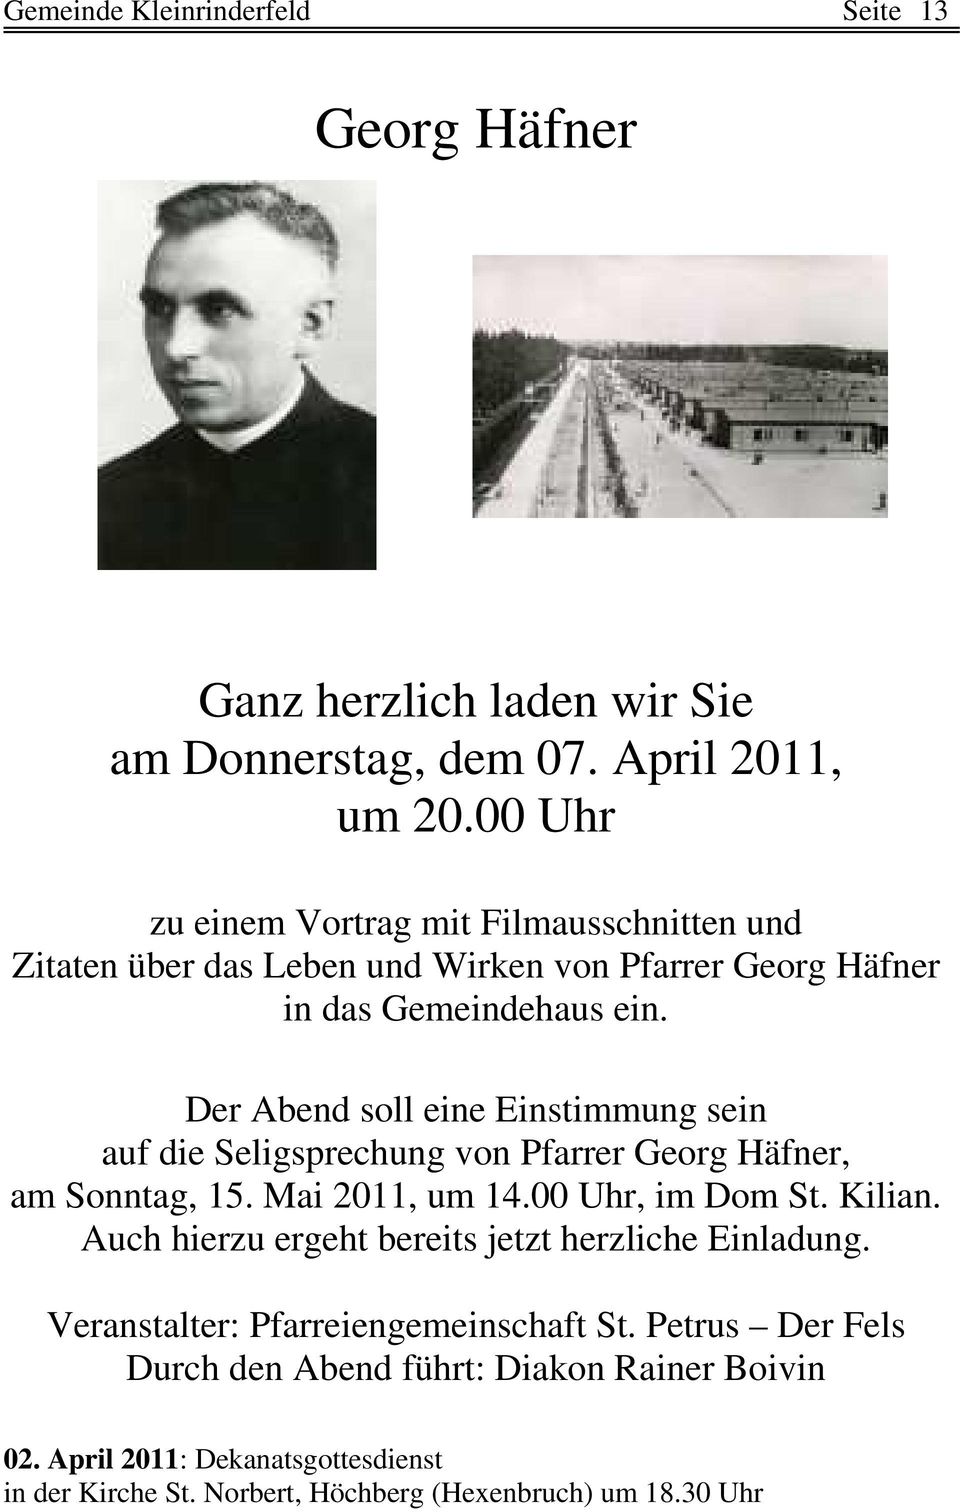 Der Abend soll eine Einstimmung sein auf die Seligsprechung von Pfarrer Georg Häfner, am Sonntag, 15. Mai 2011, um 14.00 Uhr, im Dom St. Kilian.